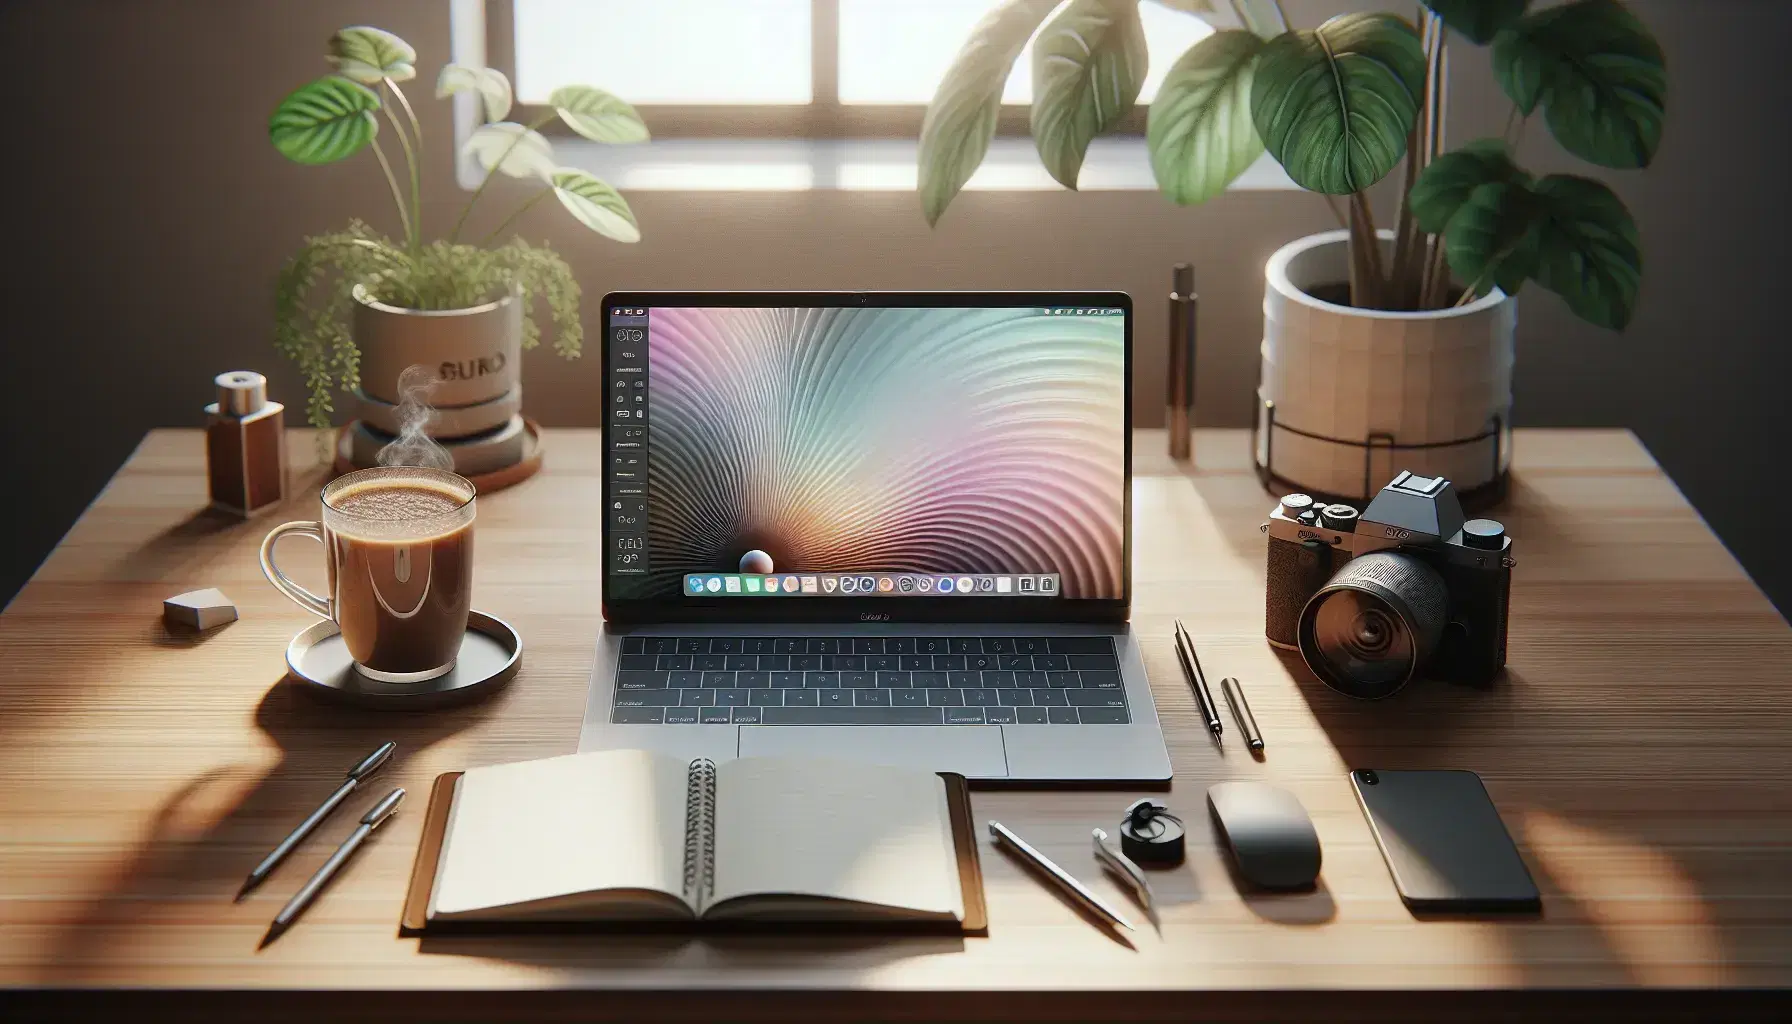 Escritorio de madera clara con laptop abierto, cuaderno en blanco con bolígrafo, taza de café humeante y planta verde en maceta blanca, junto a cámara digital.